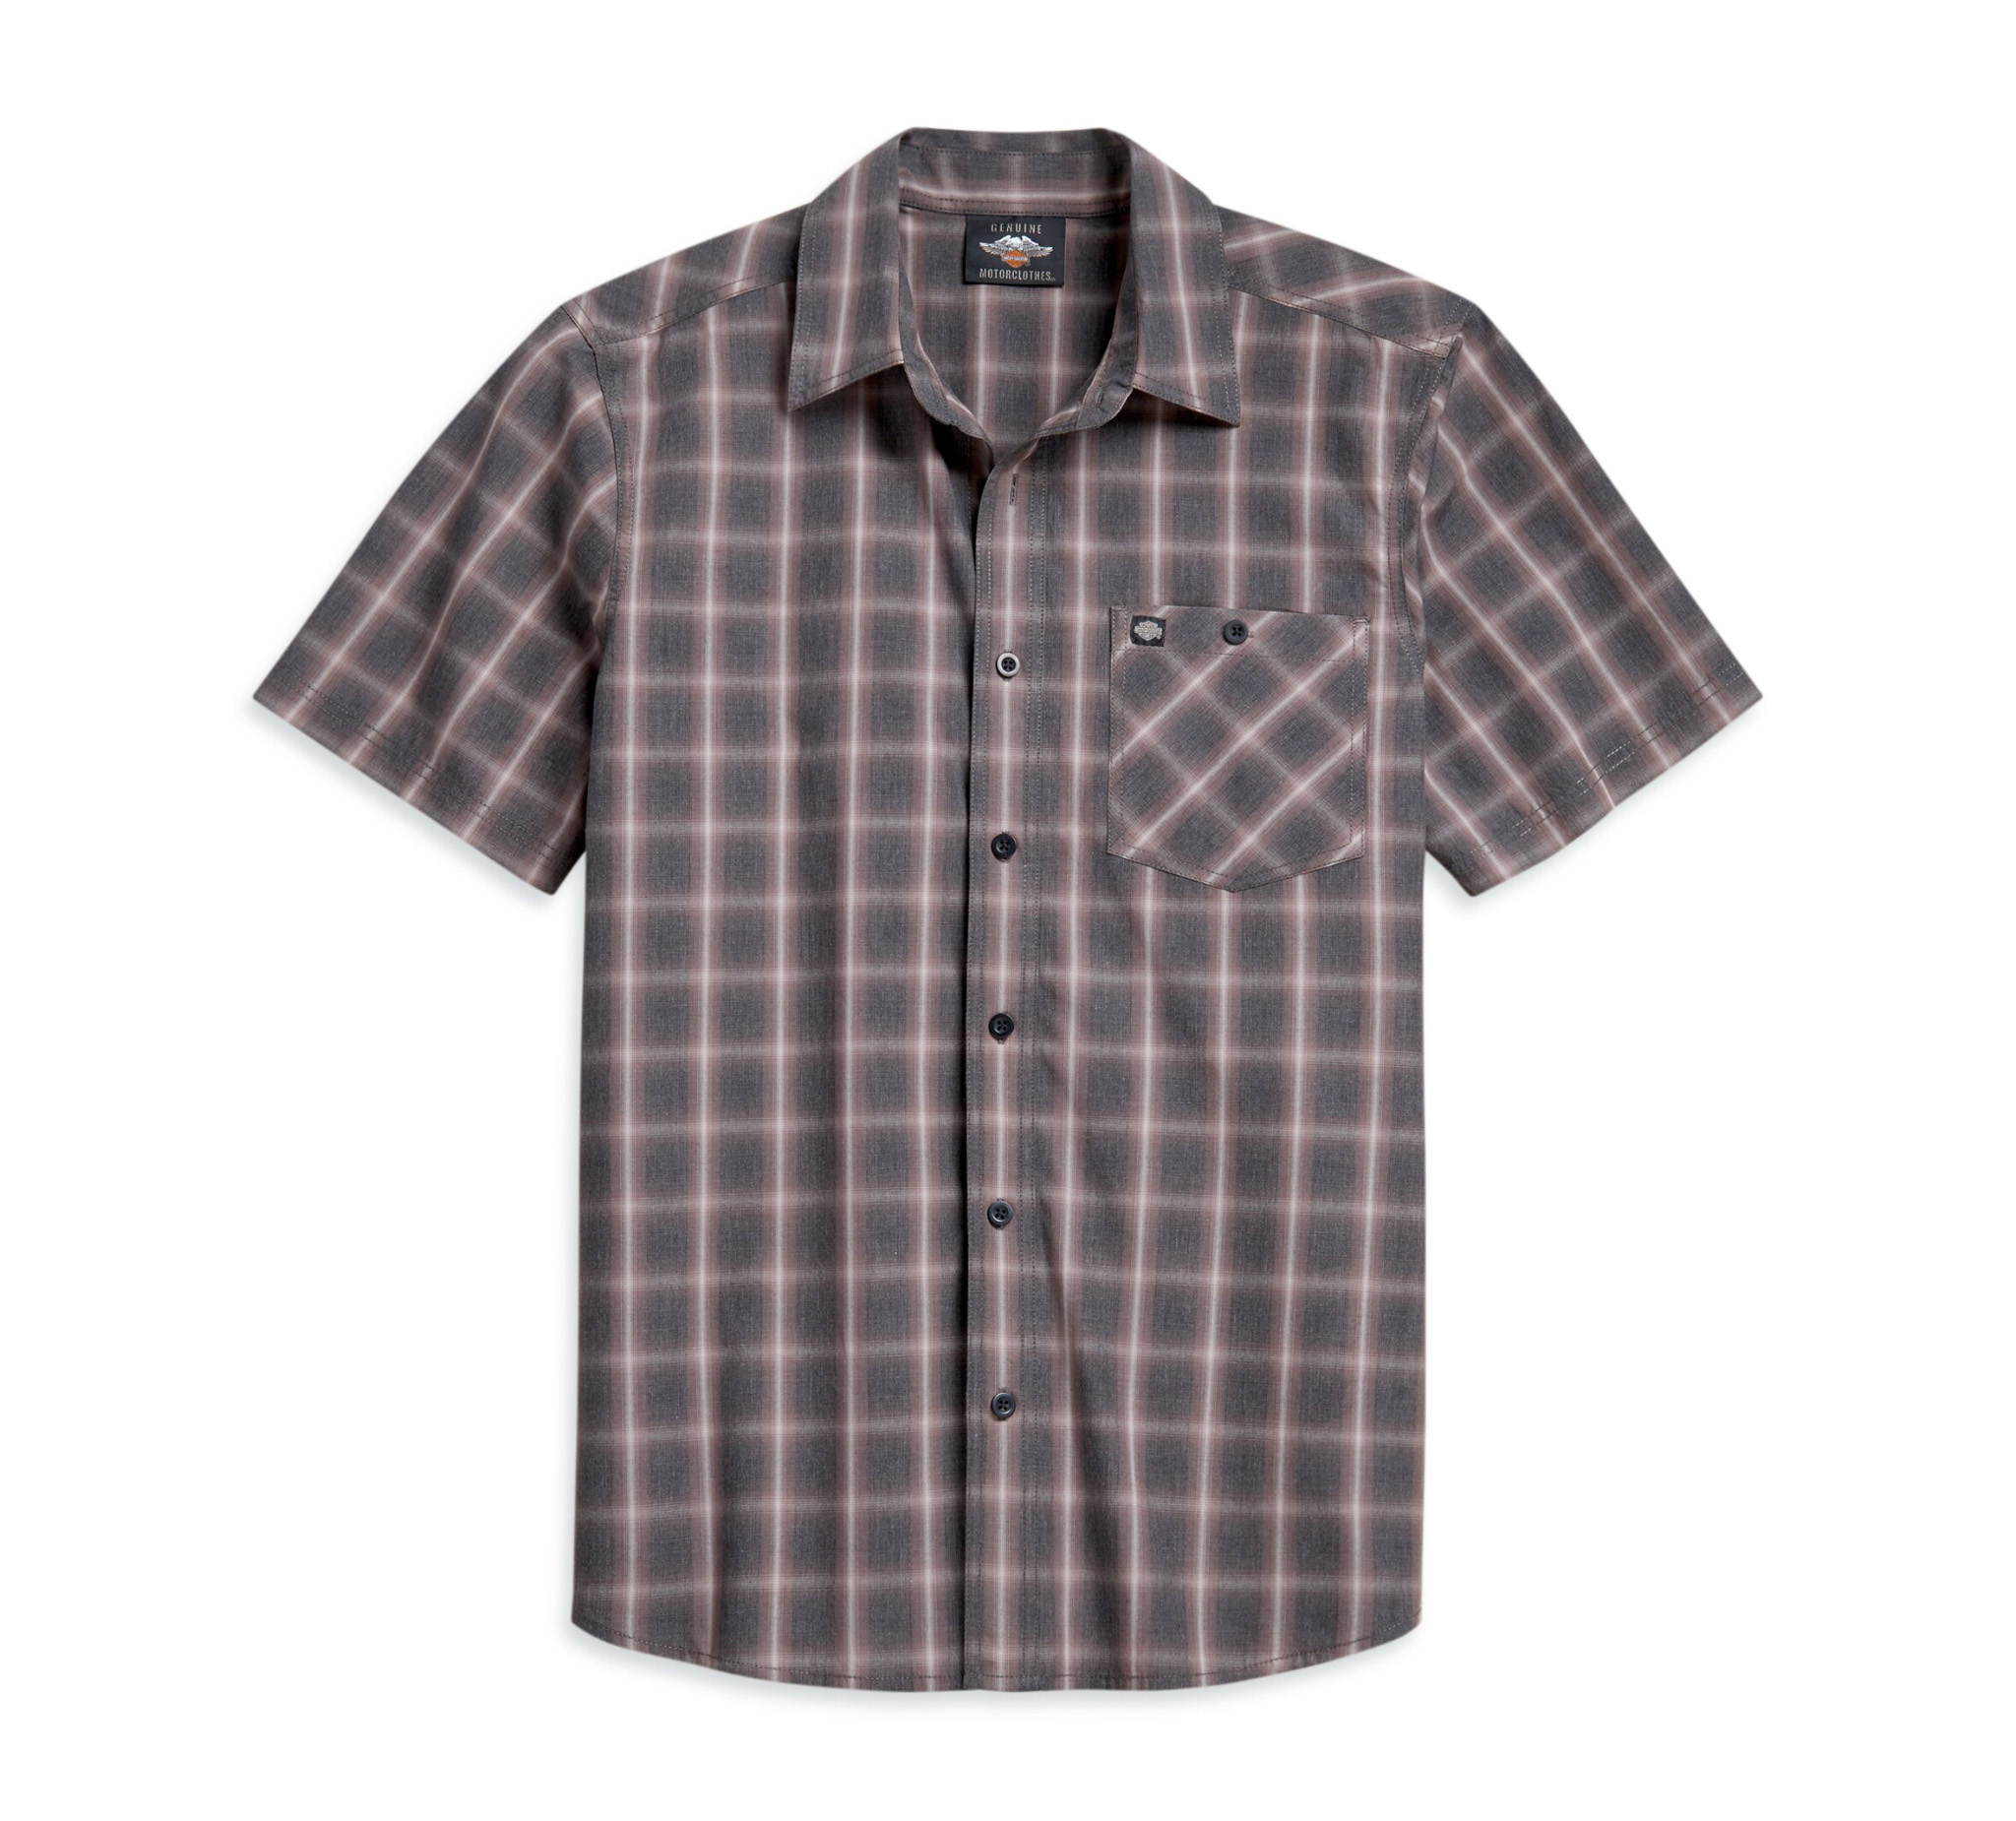 Men's Short Sleeve Plaid Shirt - 96158-21VM | Harley-Davidson USA